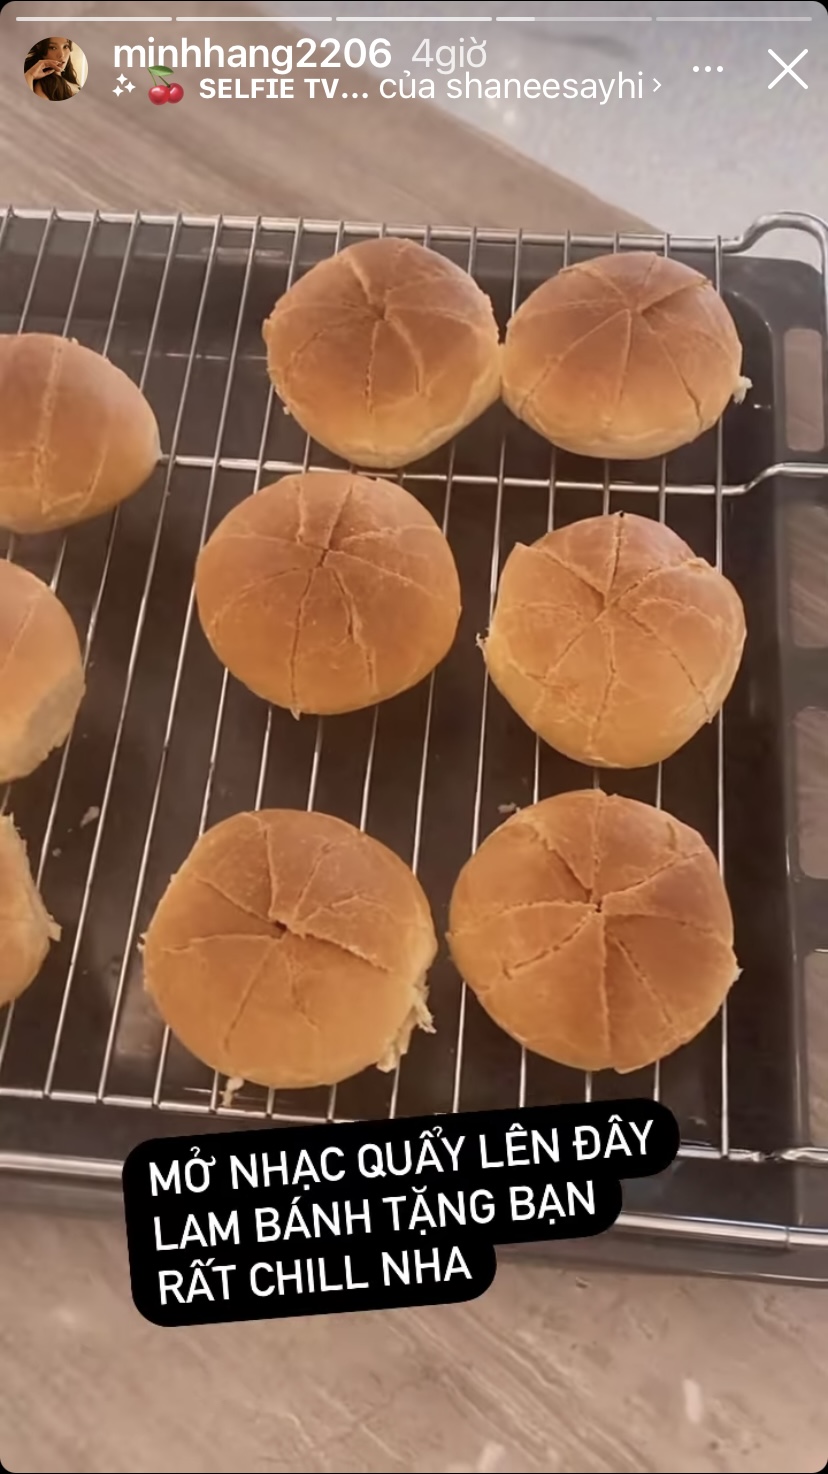 Còn đây là những chiếc bánh mì cô đang làm để tặng bạn.